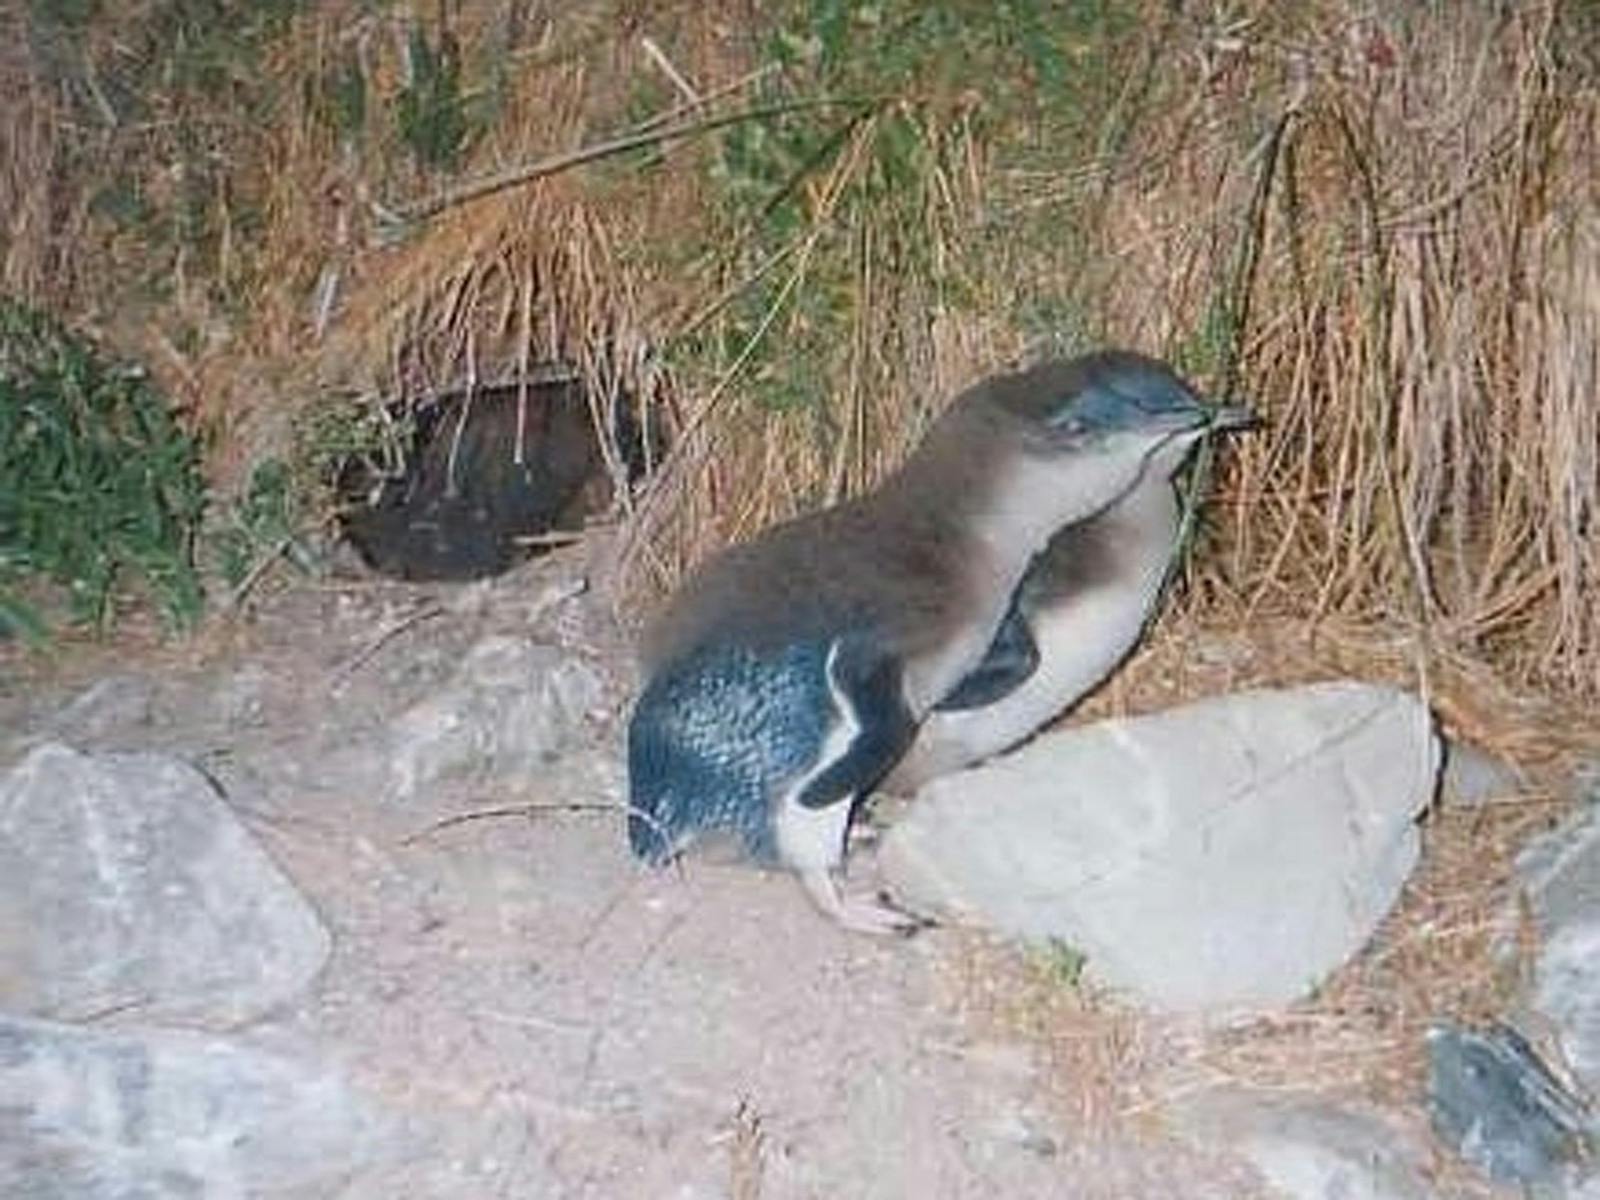 Little Penguin chicks outside burrow